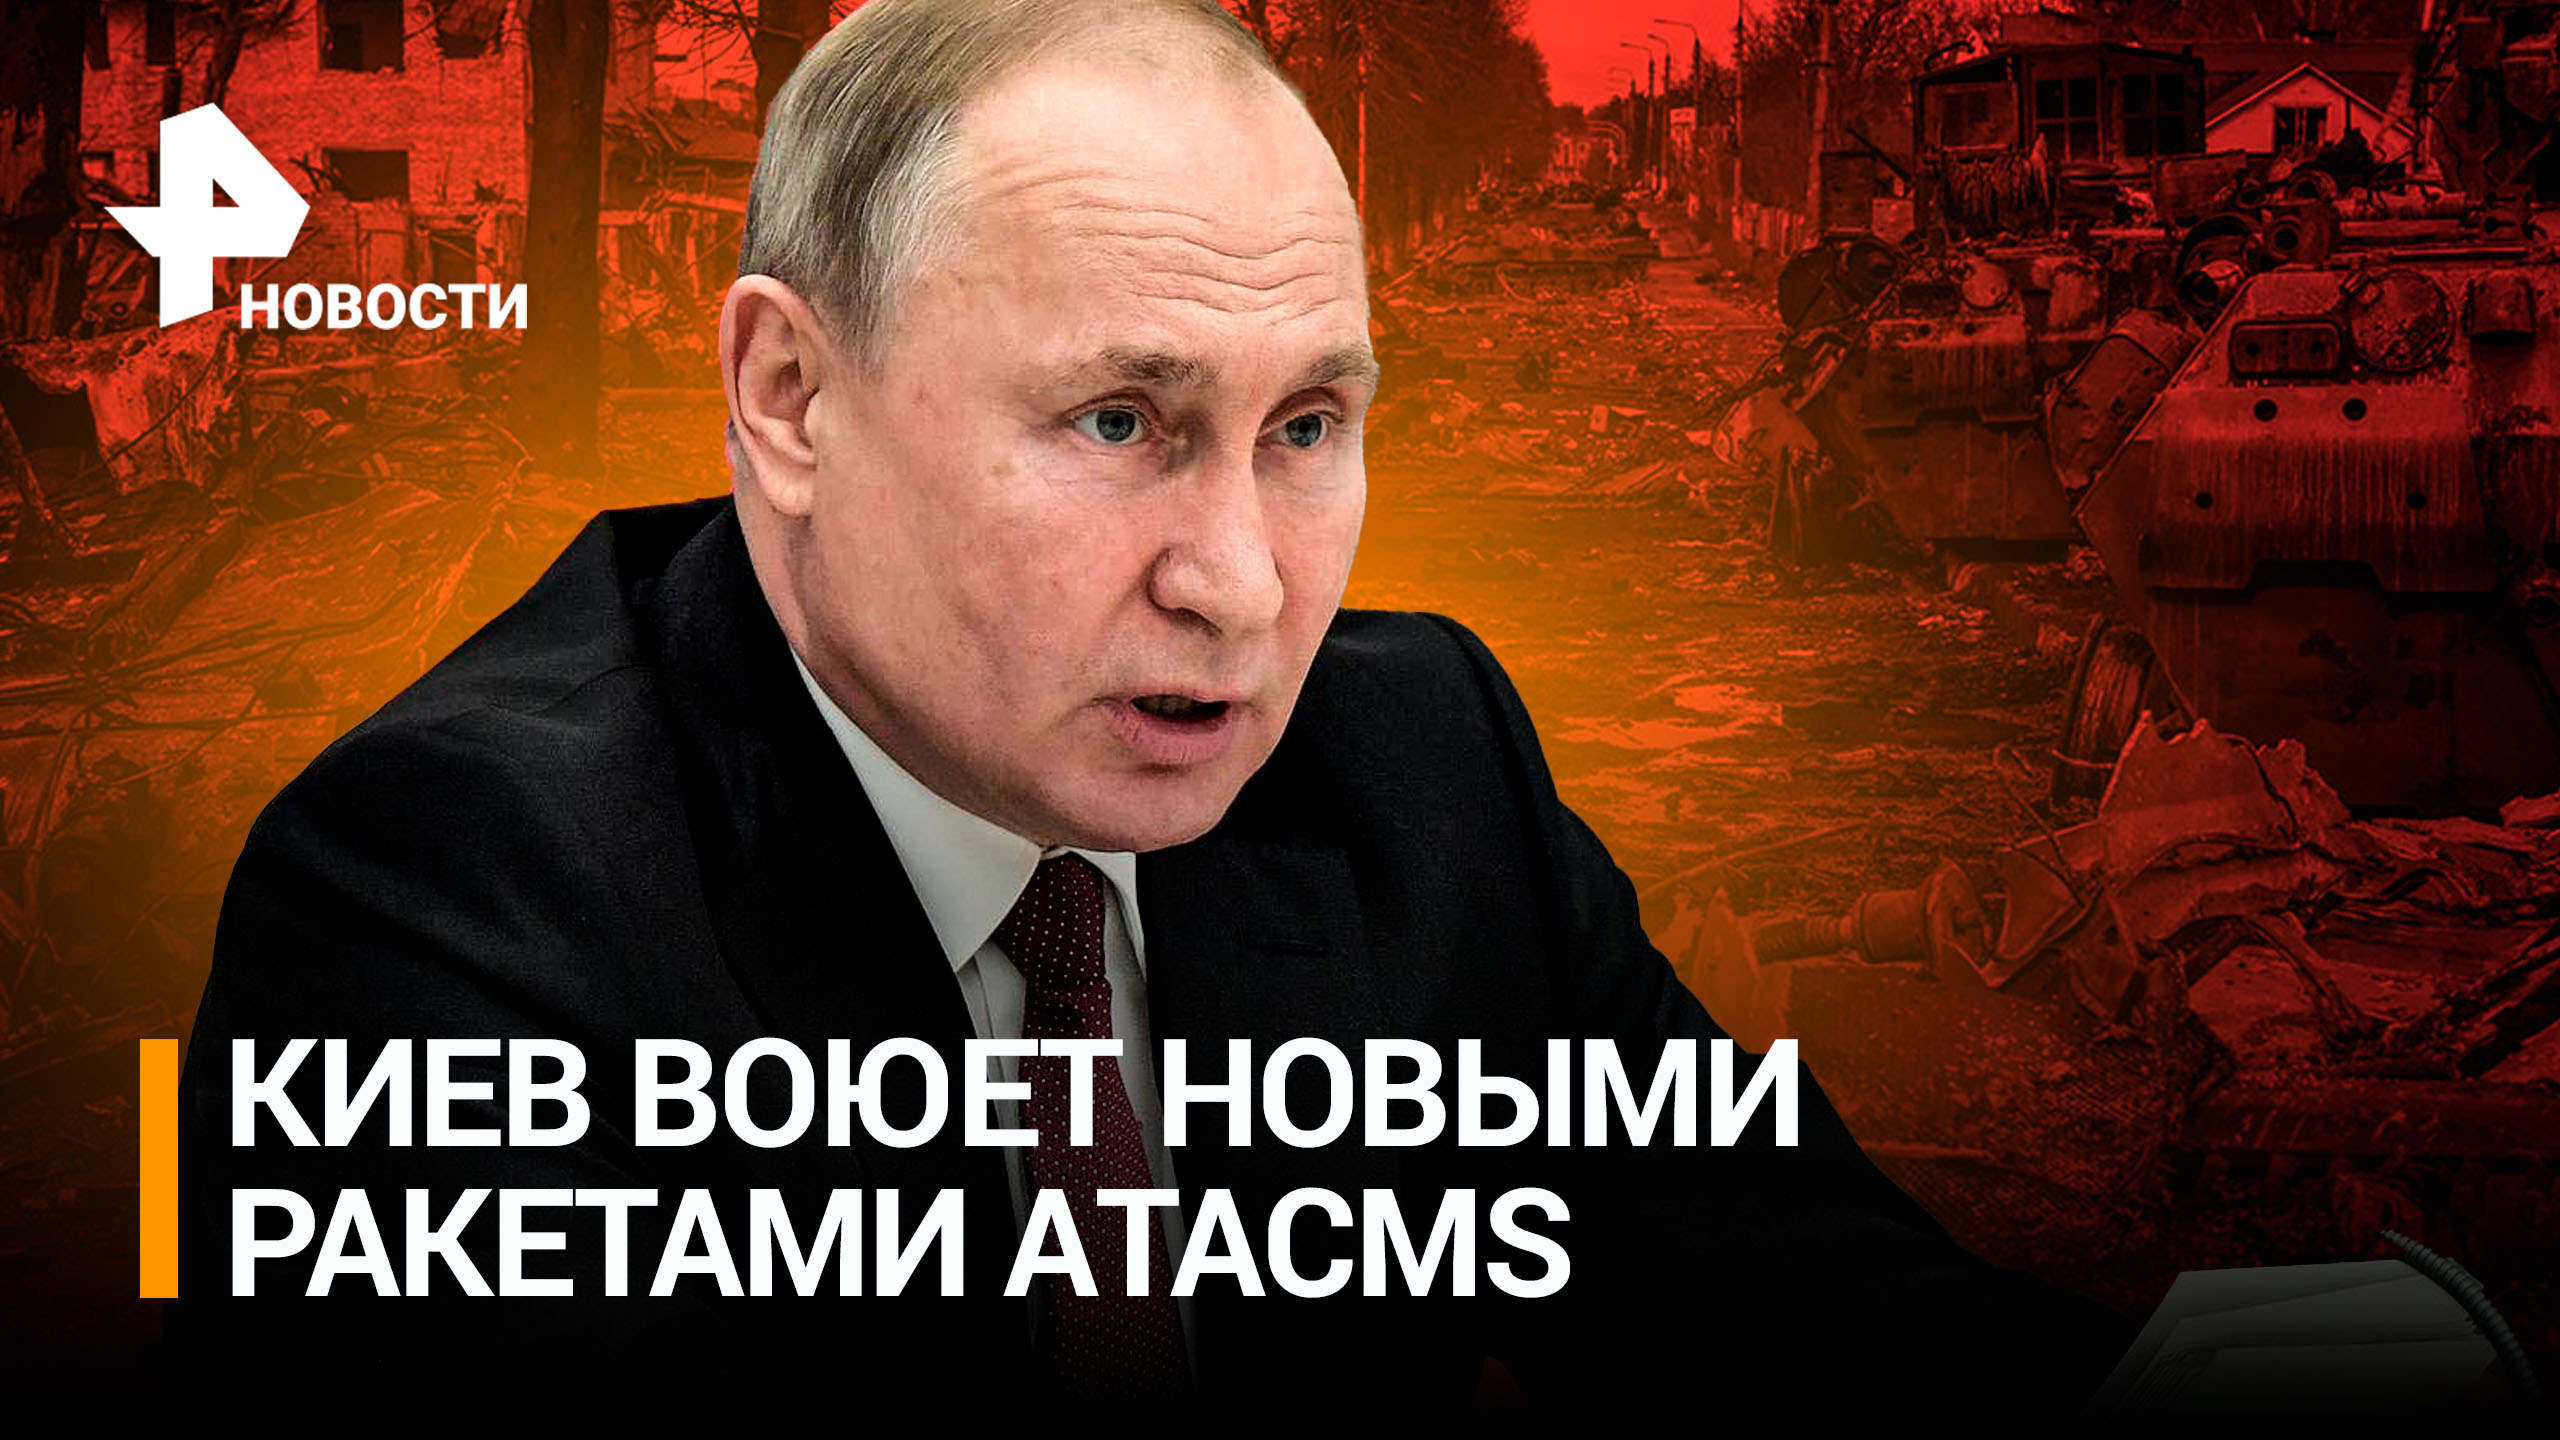 Украина впервые применила ATACMS: США в тайне передали ракеты. Путин об «очередной ошибке» США